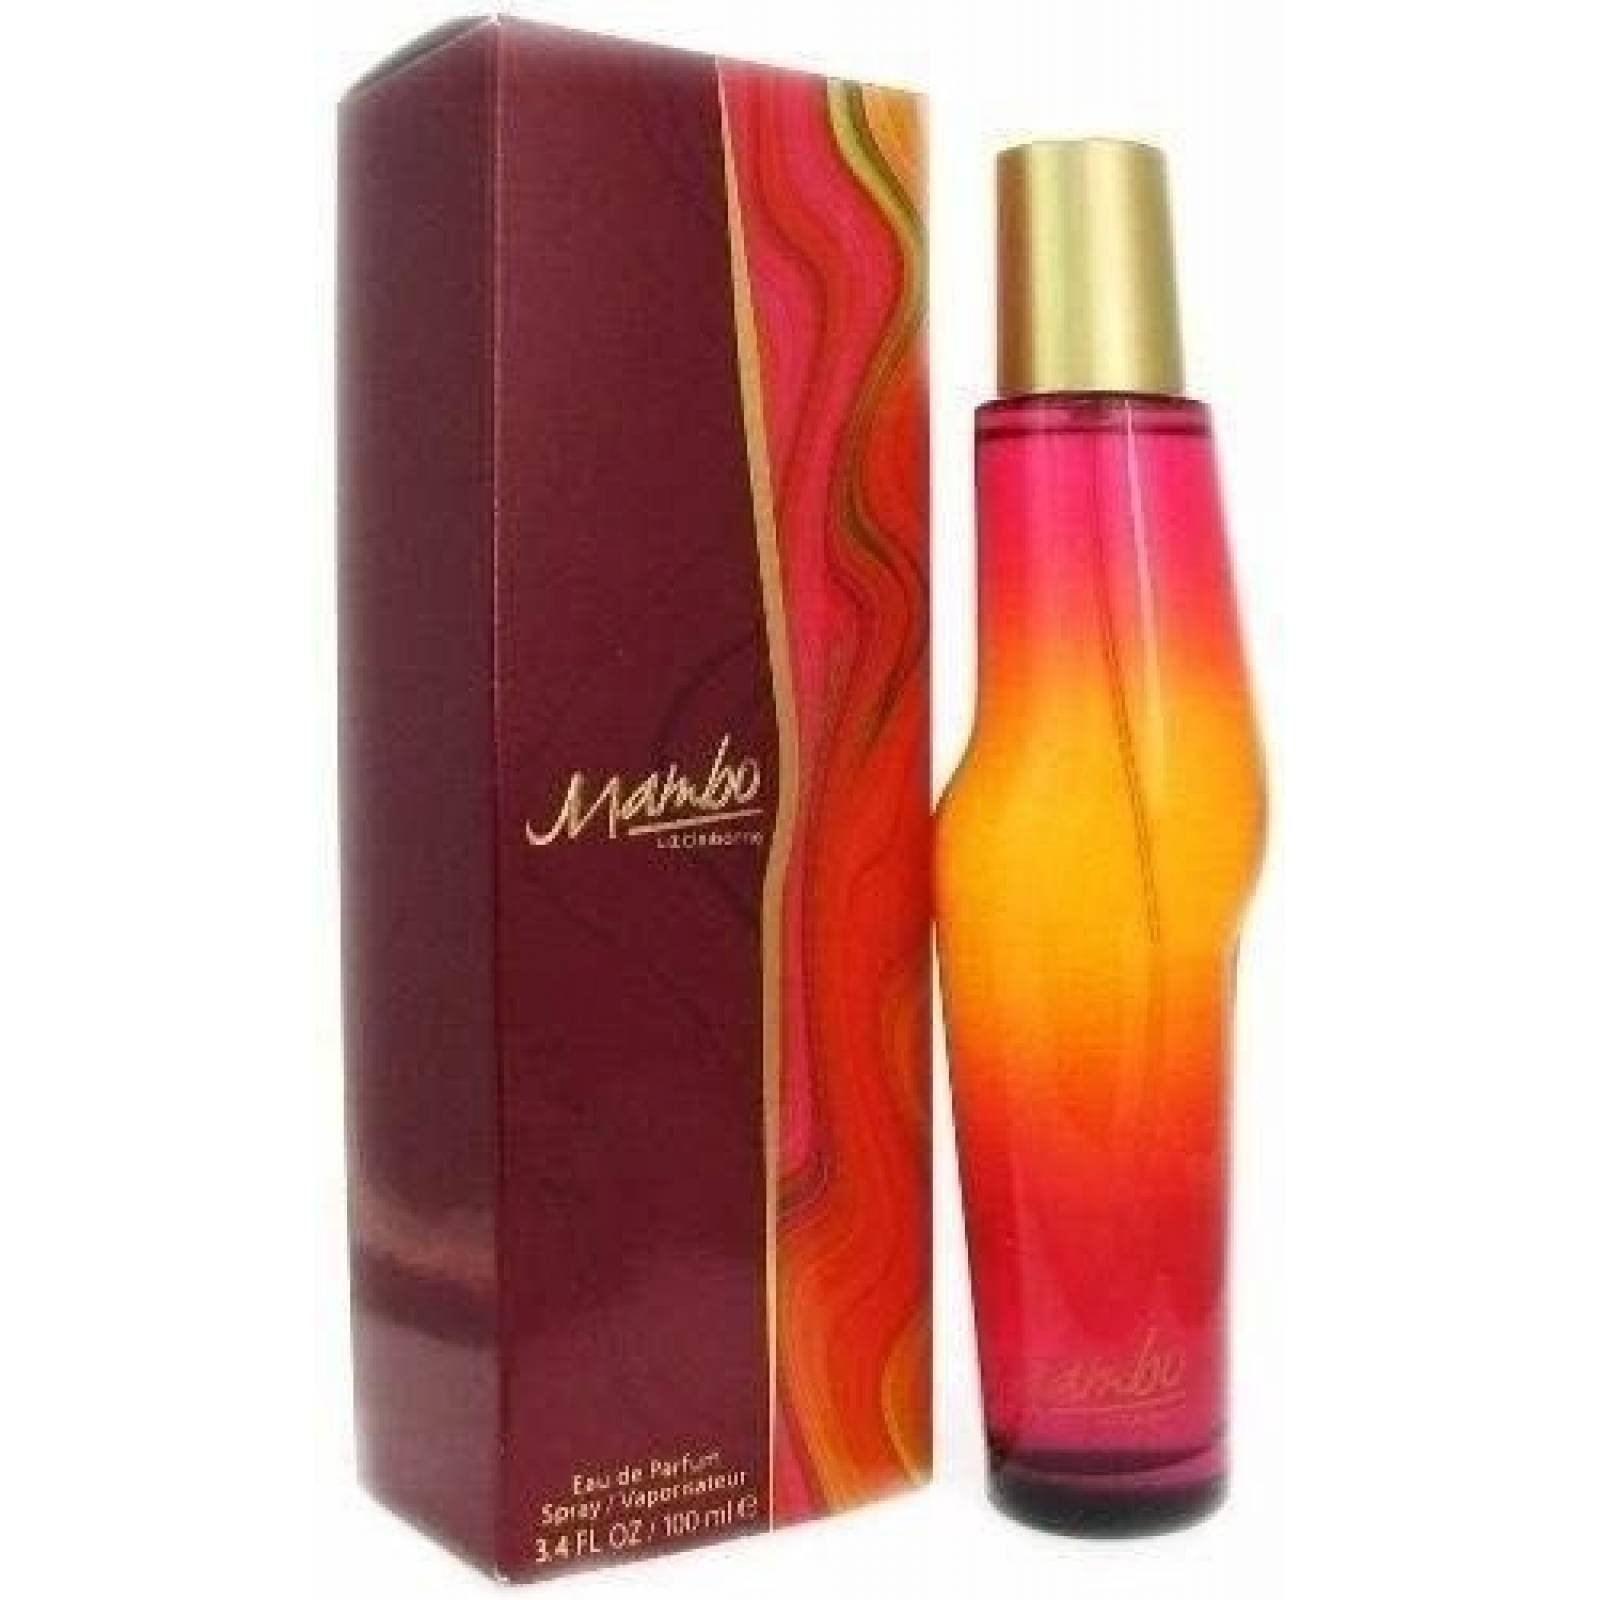 Mambo Dama 100 Ml Liz Claiborne Spray - Perfume Original